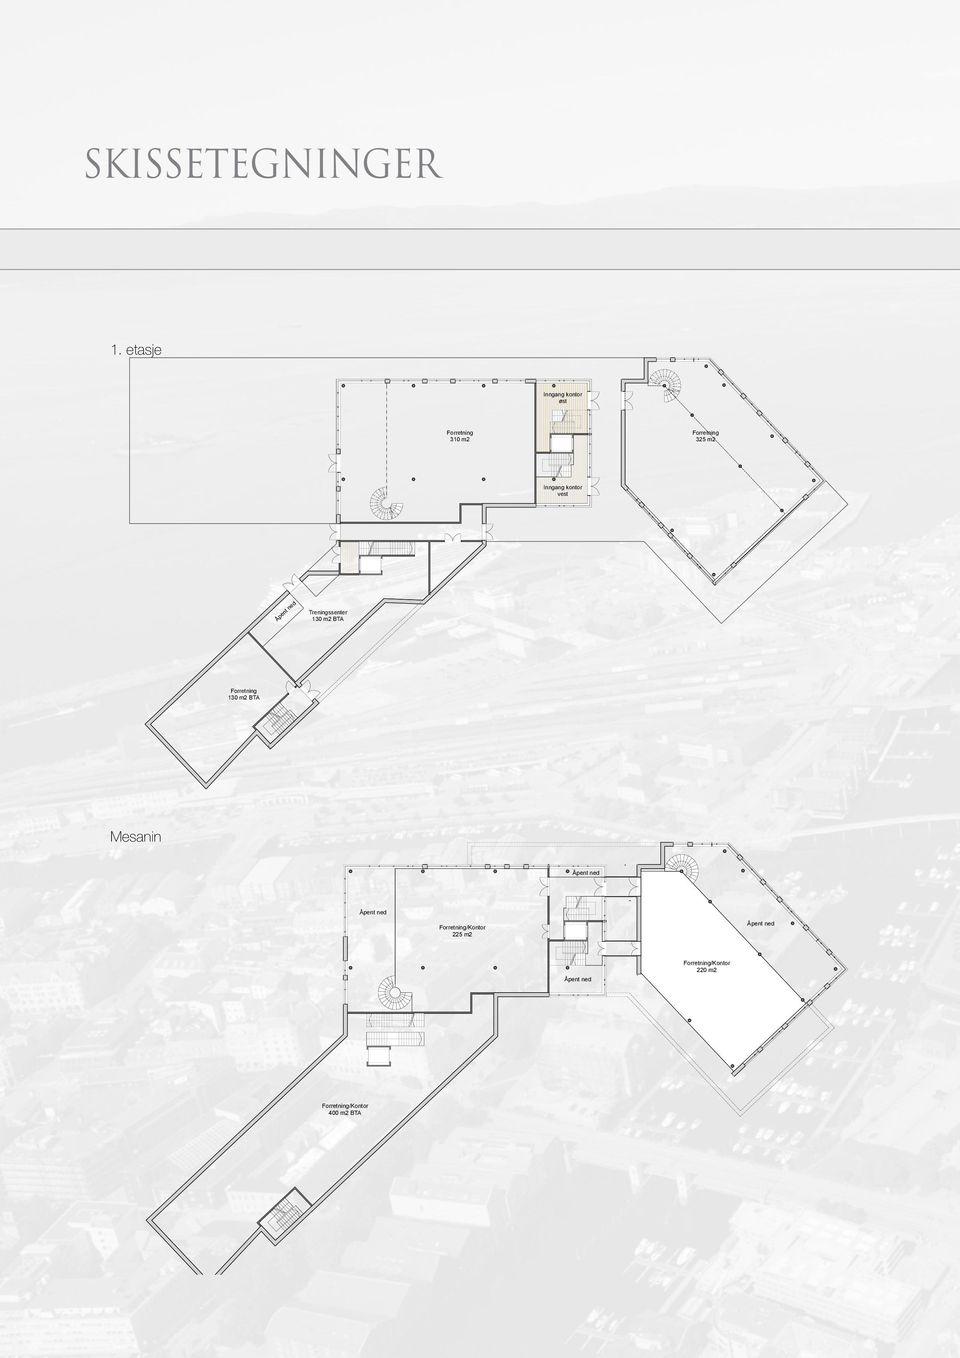 Åpent ned130 m2 BTA Forretning 130 m2 BTA Bassengbakken 2 - Utleieprospekt - Plan 1.